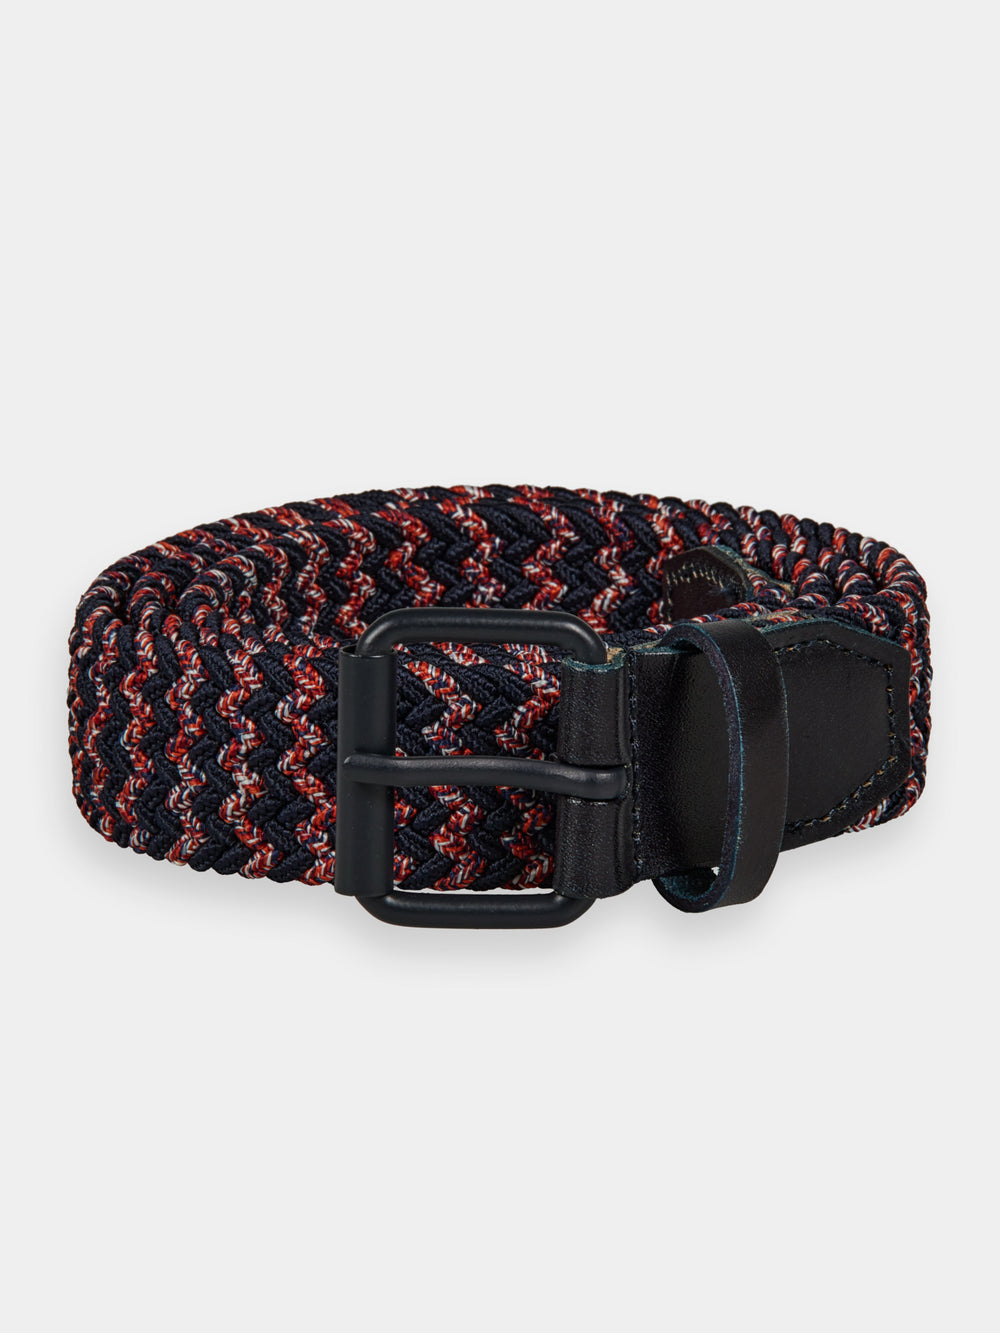 Braided leather & cord belt - Scotch & Soda AU